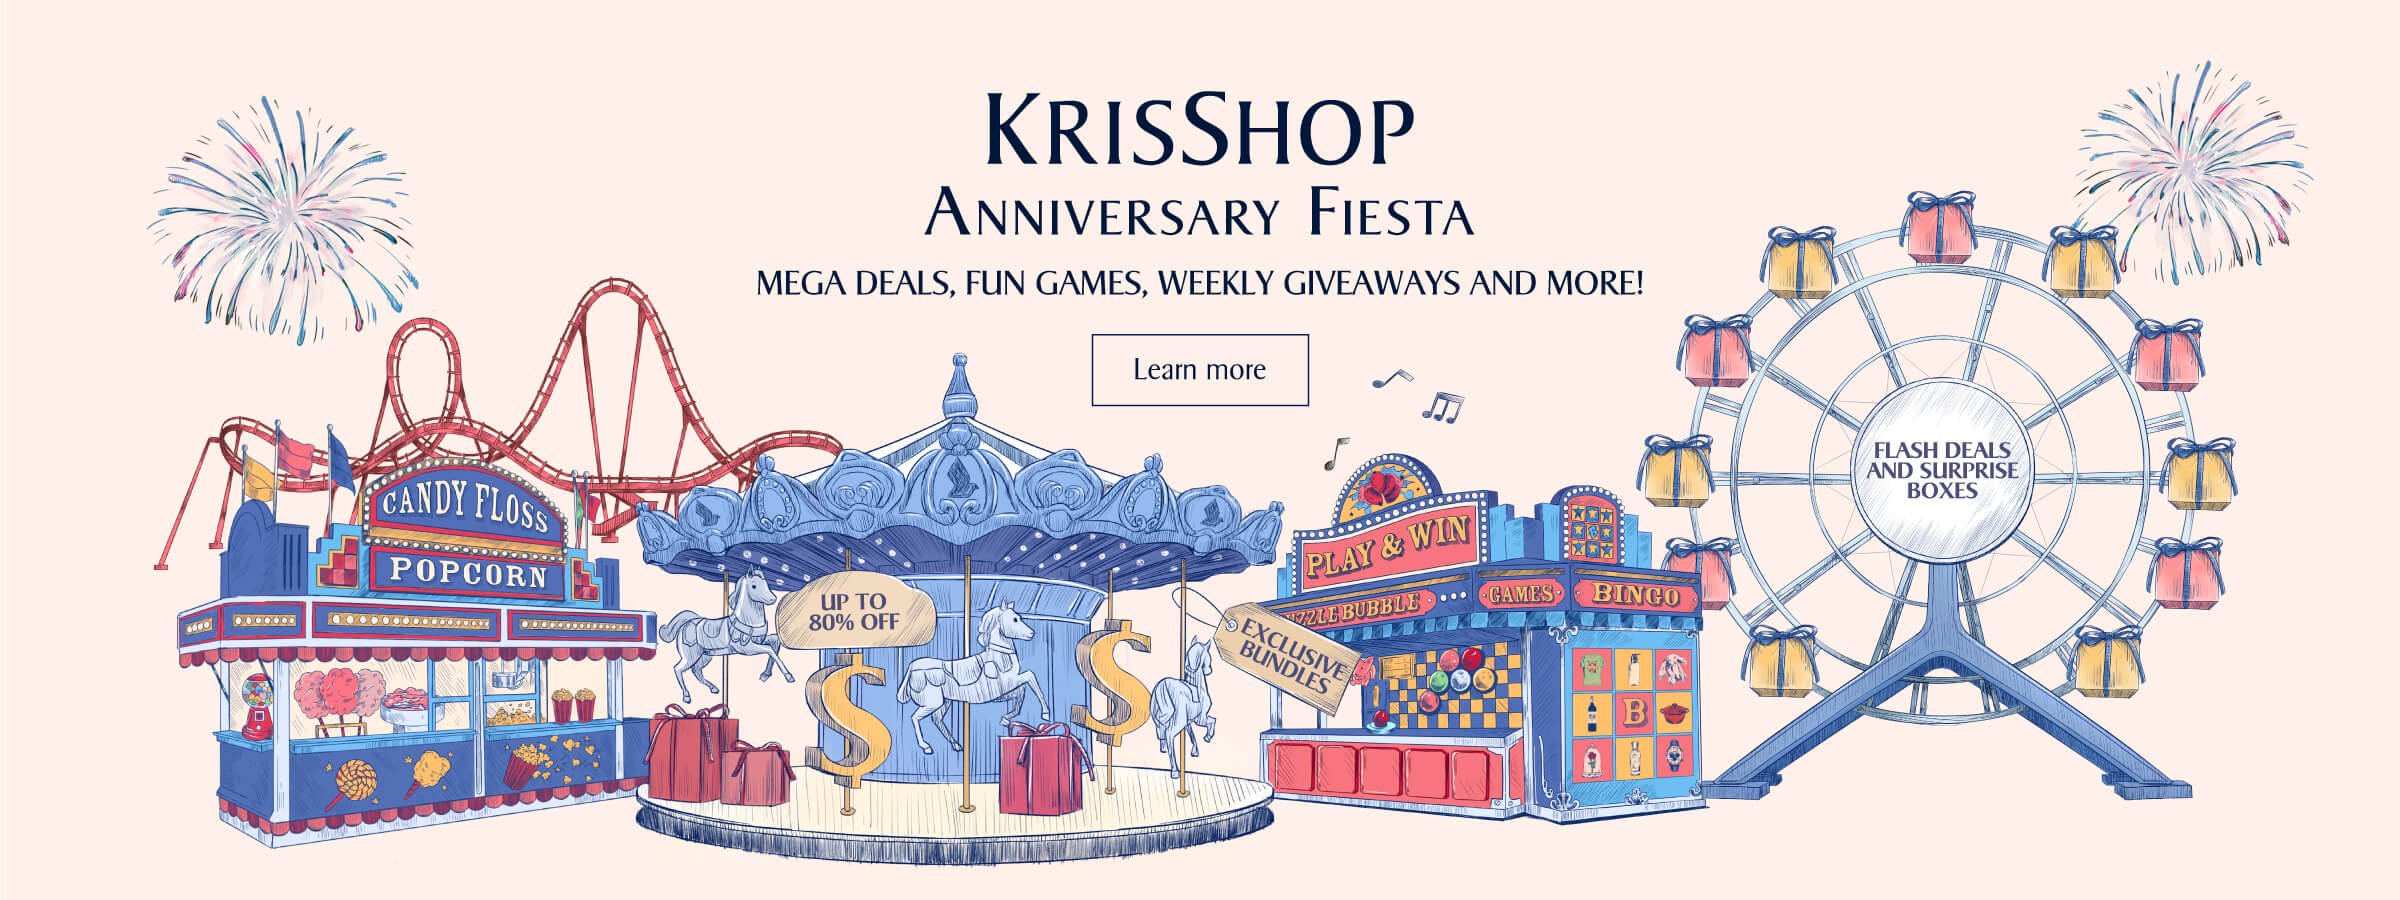 KrisShop Anniversary Fiesta